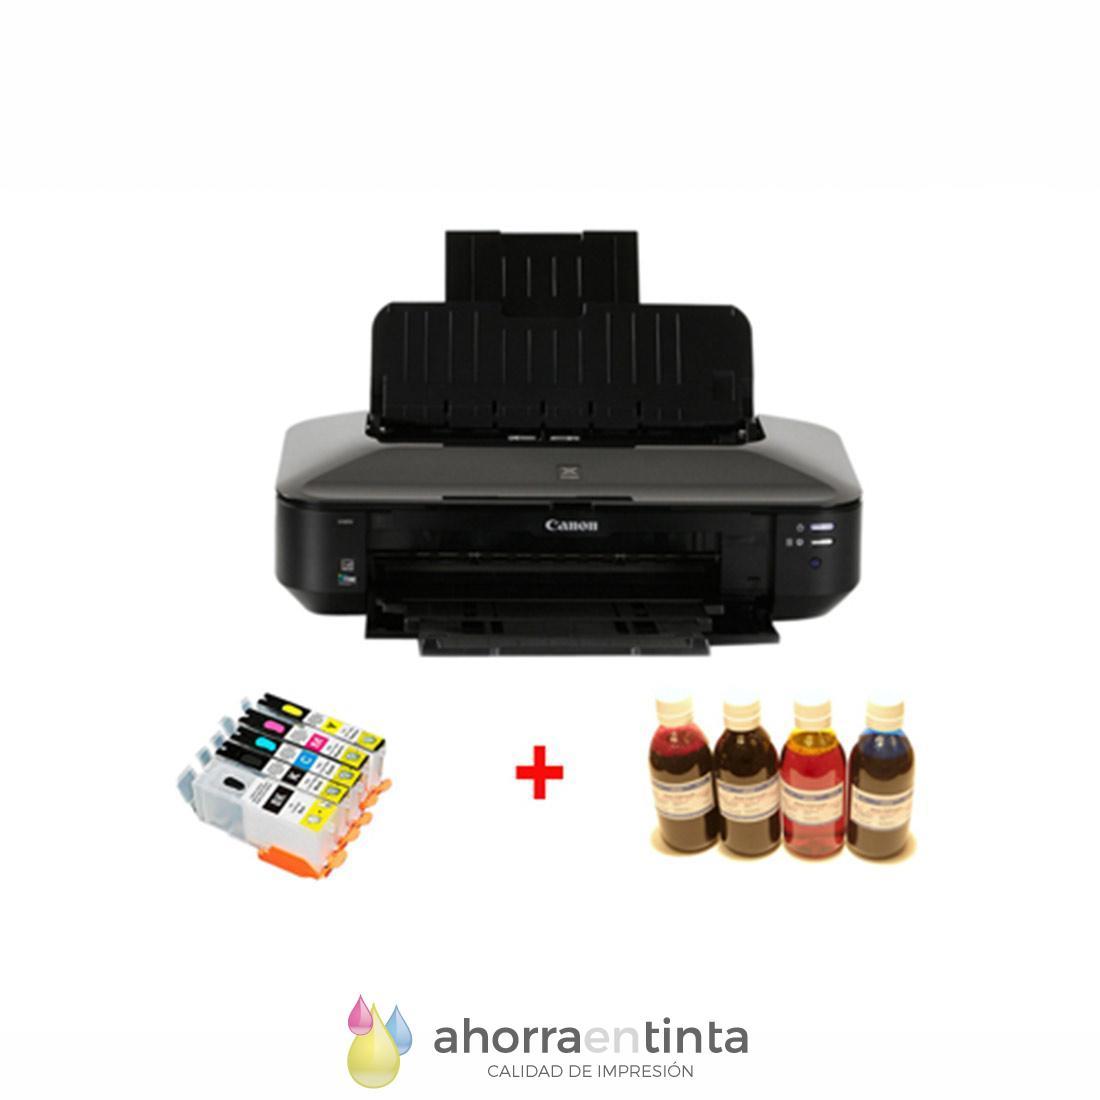 Pack Impresora A3 Canon Pixma IX6850 + 5 cartuchos recargables + 4 botellas  tinta comestible